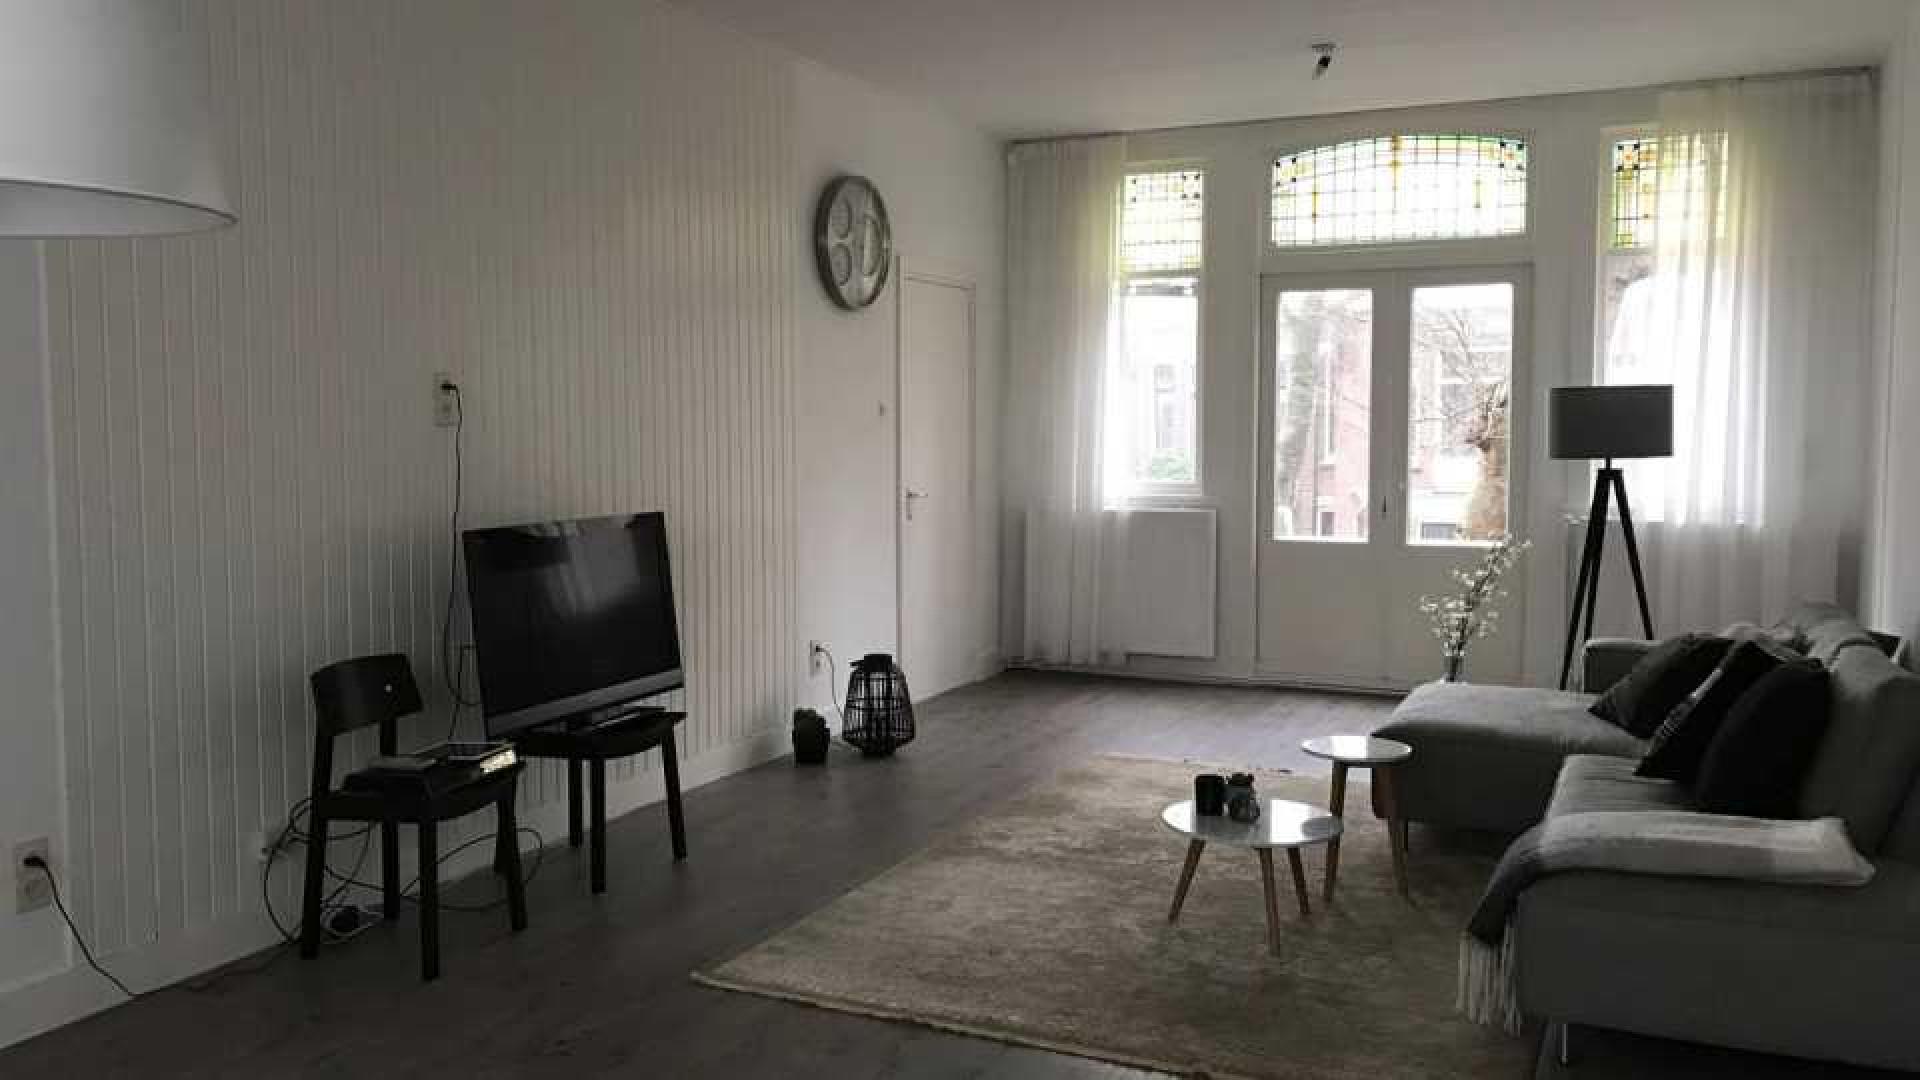 Vriendin Ruud Gullit verhuurt haar appartement. Zie foto's